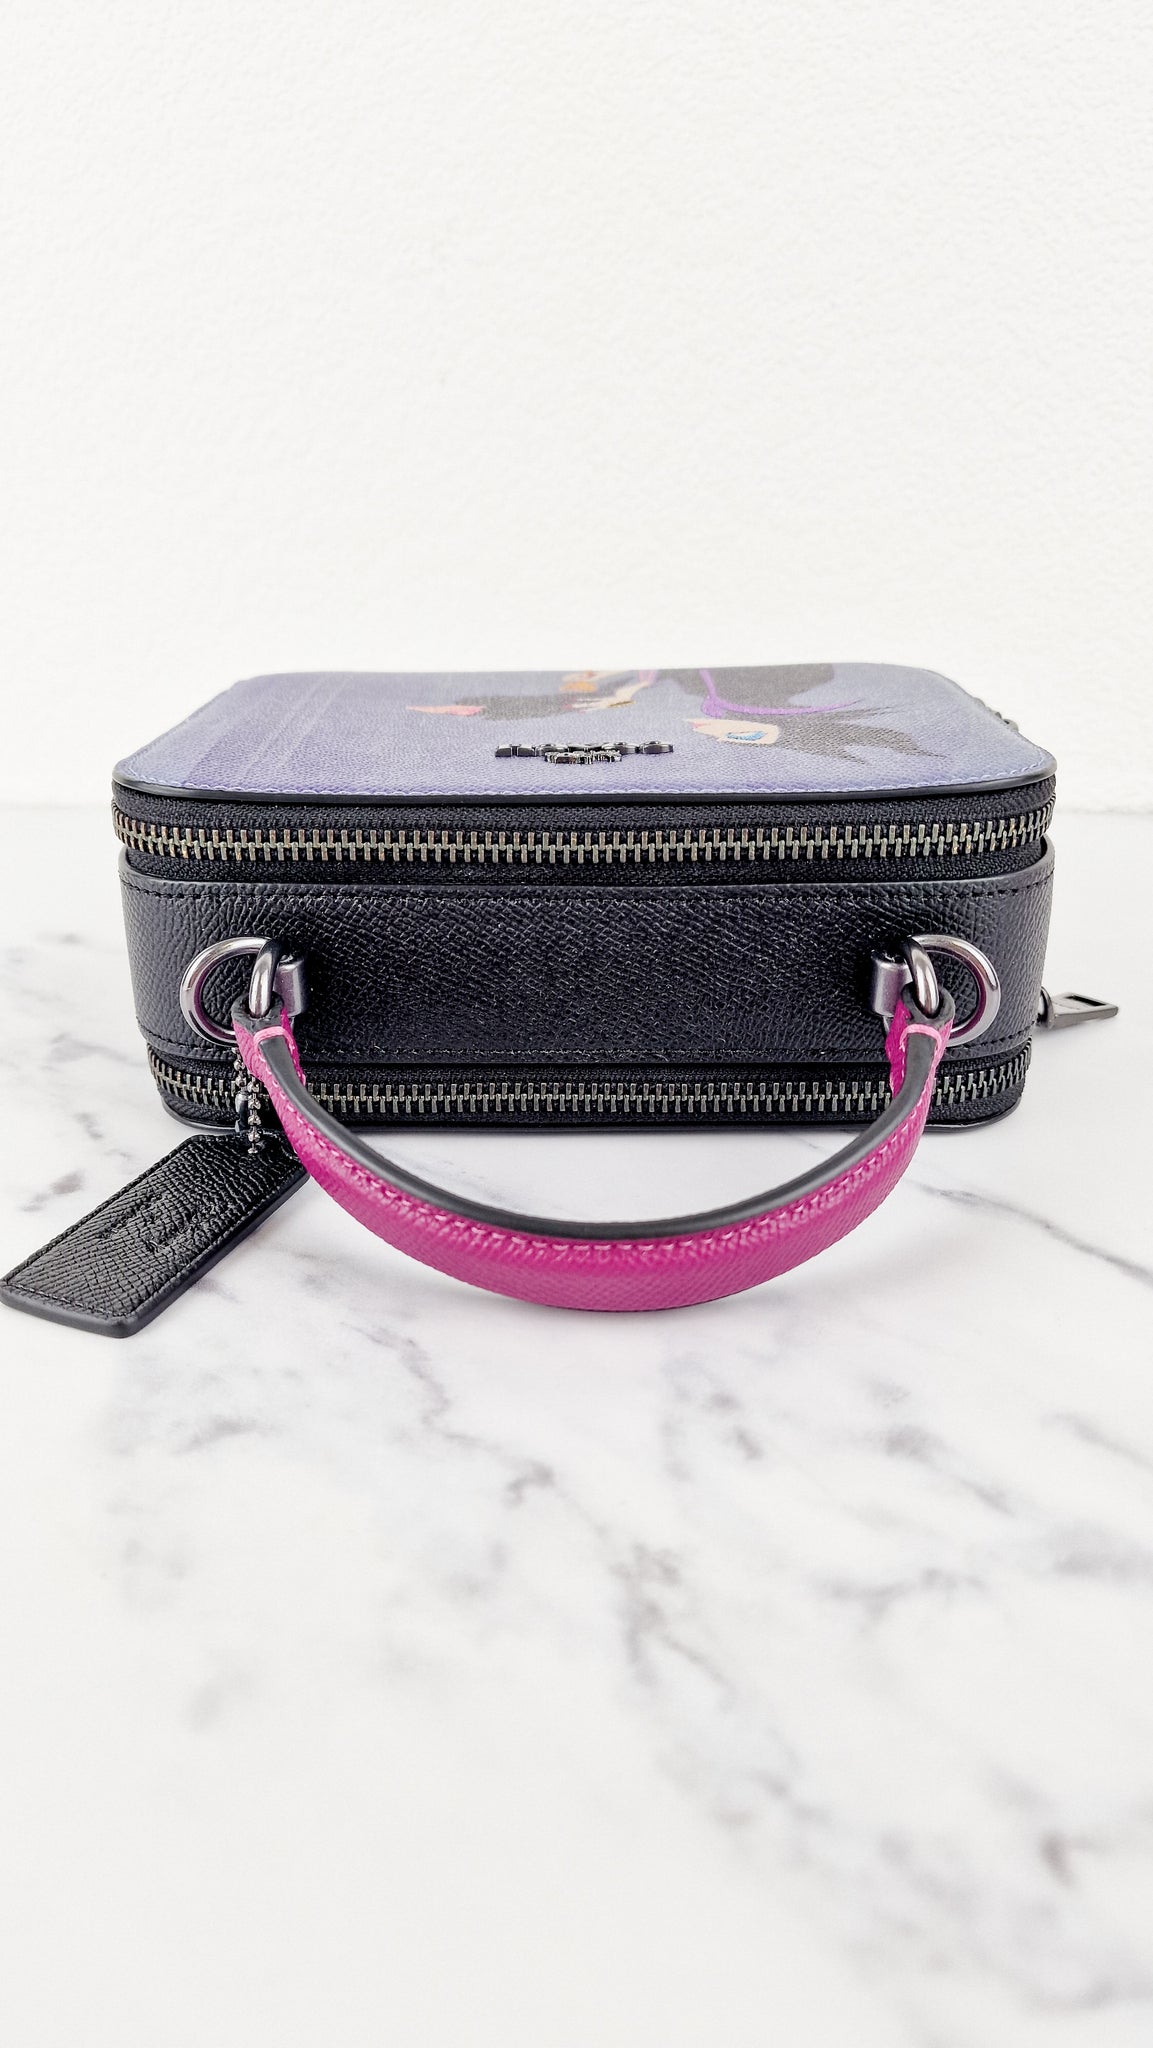 Disney x Coach Box Crossbody With Maleficent Motif Lunchbox Bag Purple –  Essex Fashion House